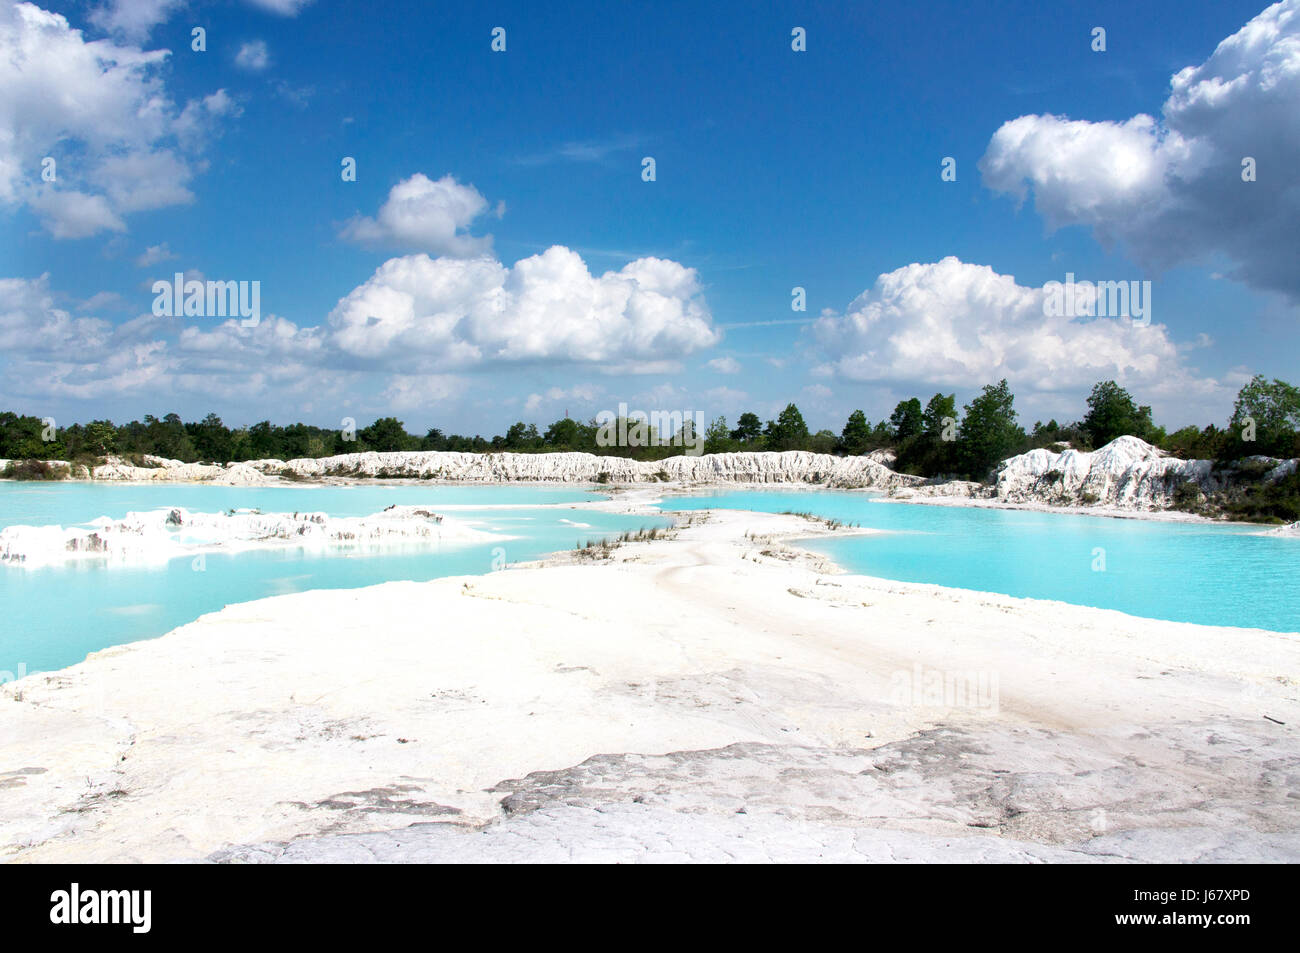 Man-made del lago artificiale di caolino, girato dalla massa di data mining fori riempiti con acqua di pioggia formando un chiaro lago blu, aria Raya Village, Tanjung Pandan, B Foto Stock